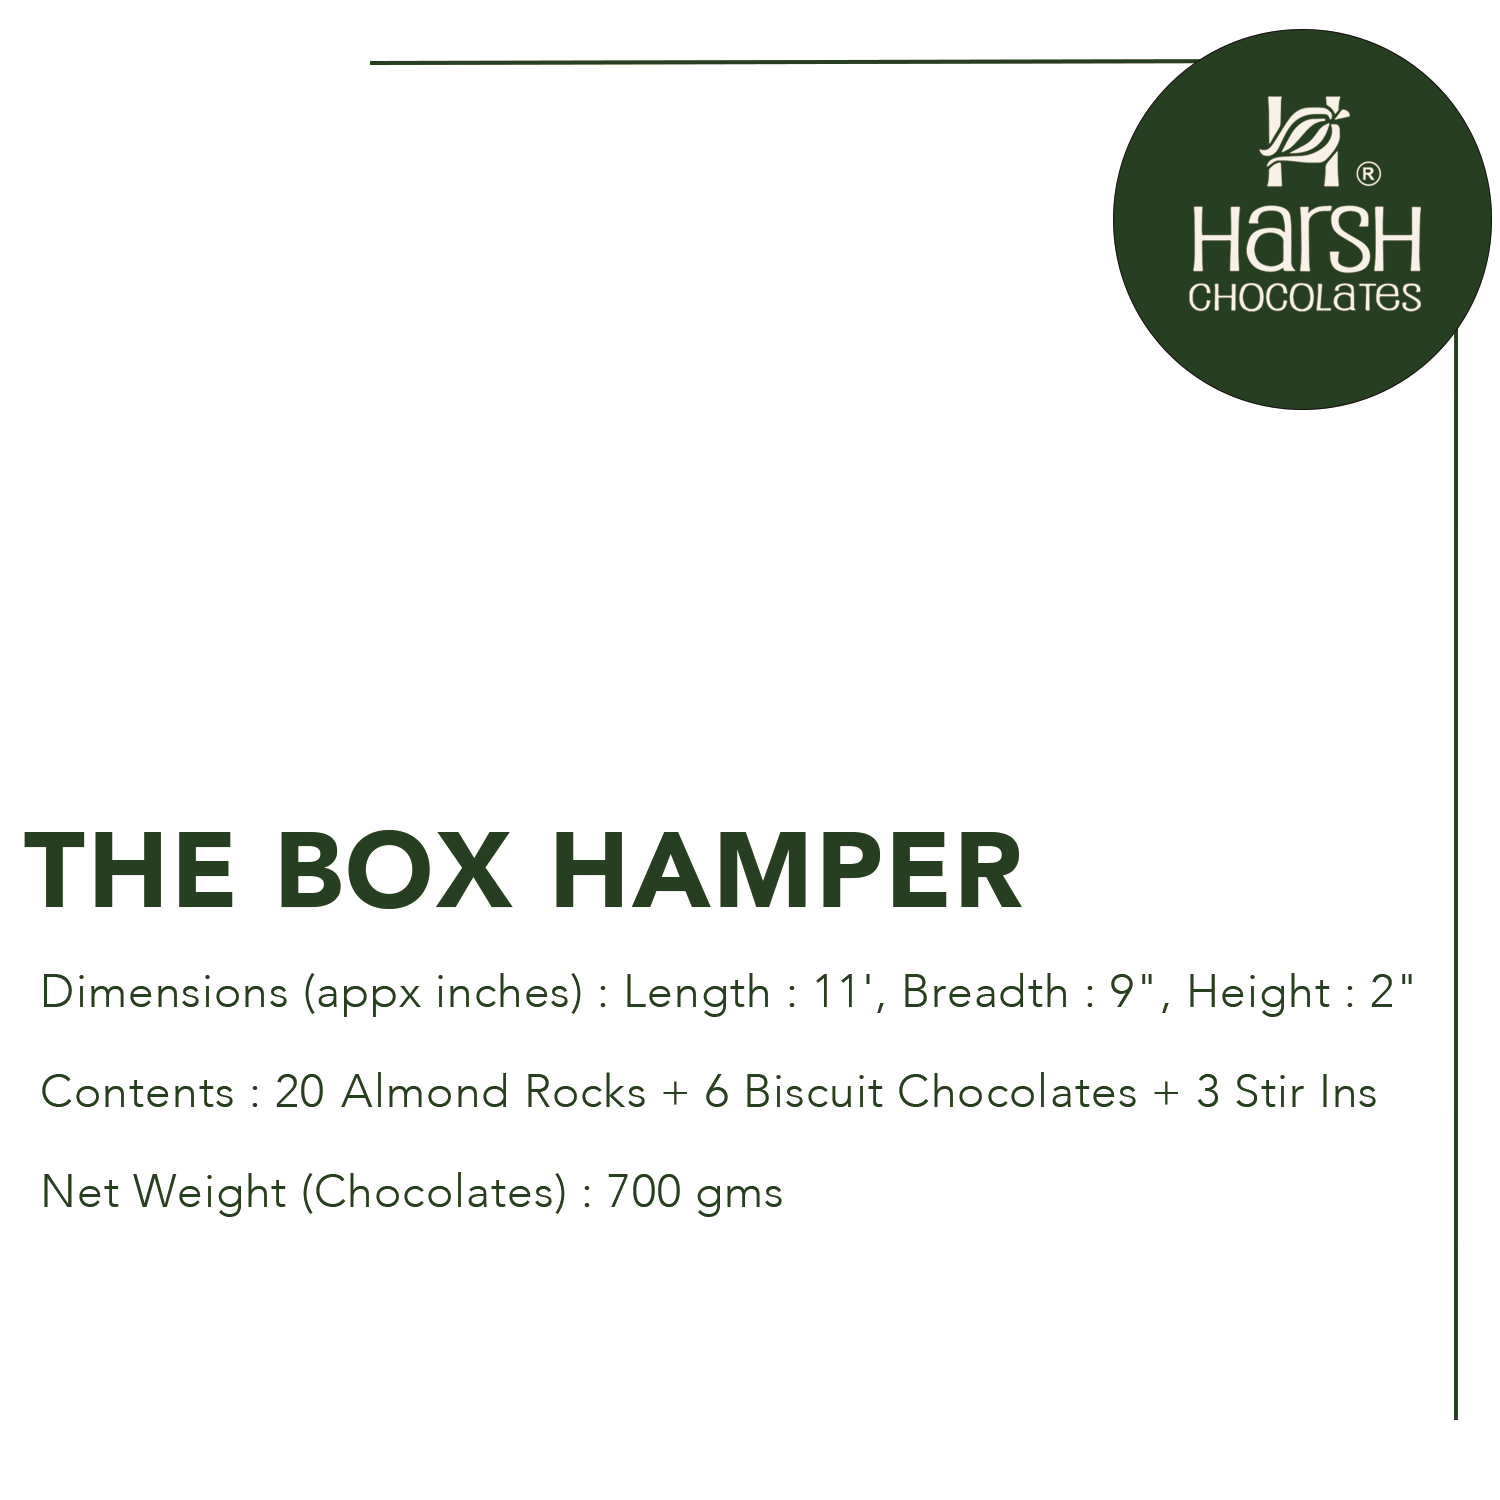 The Box Hamper